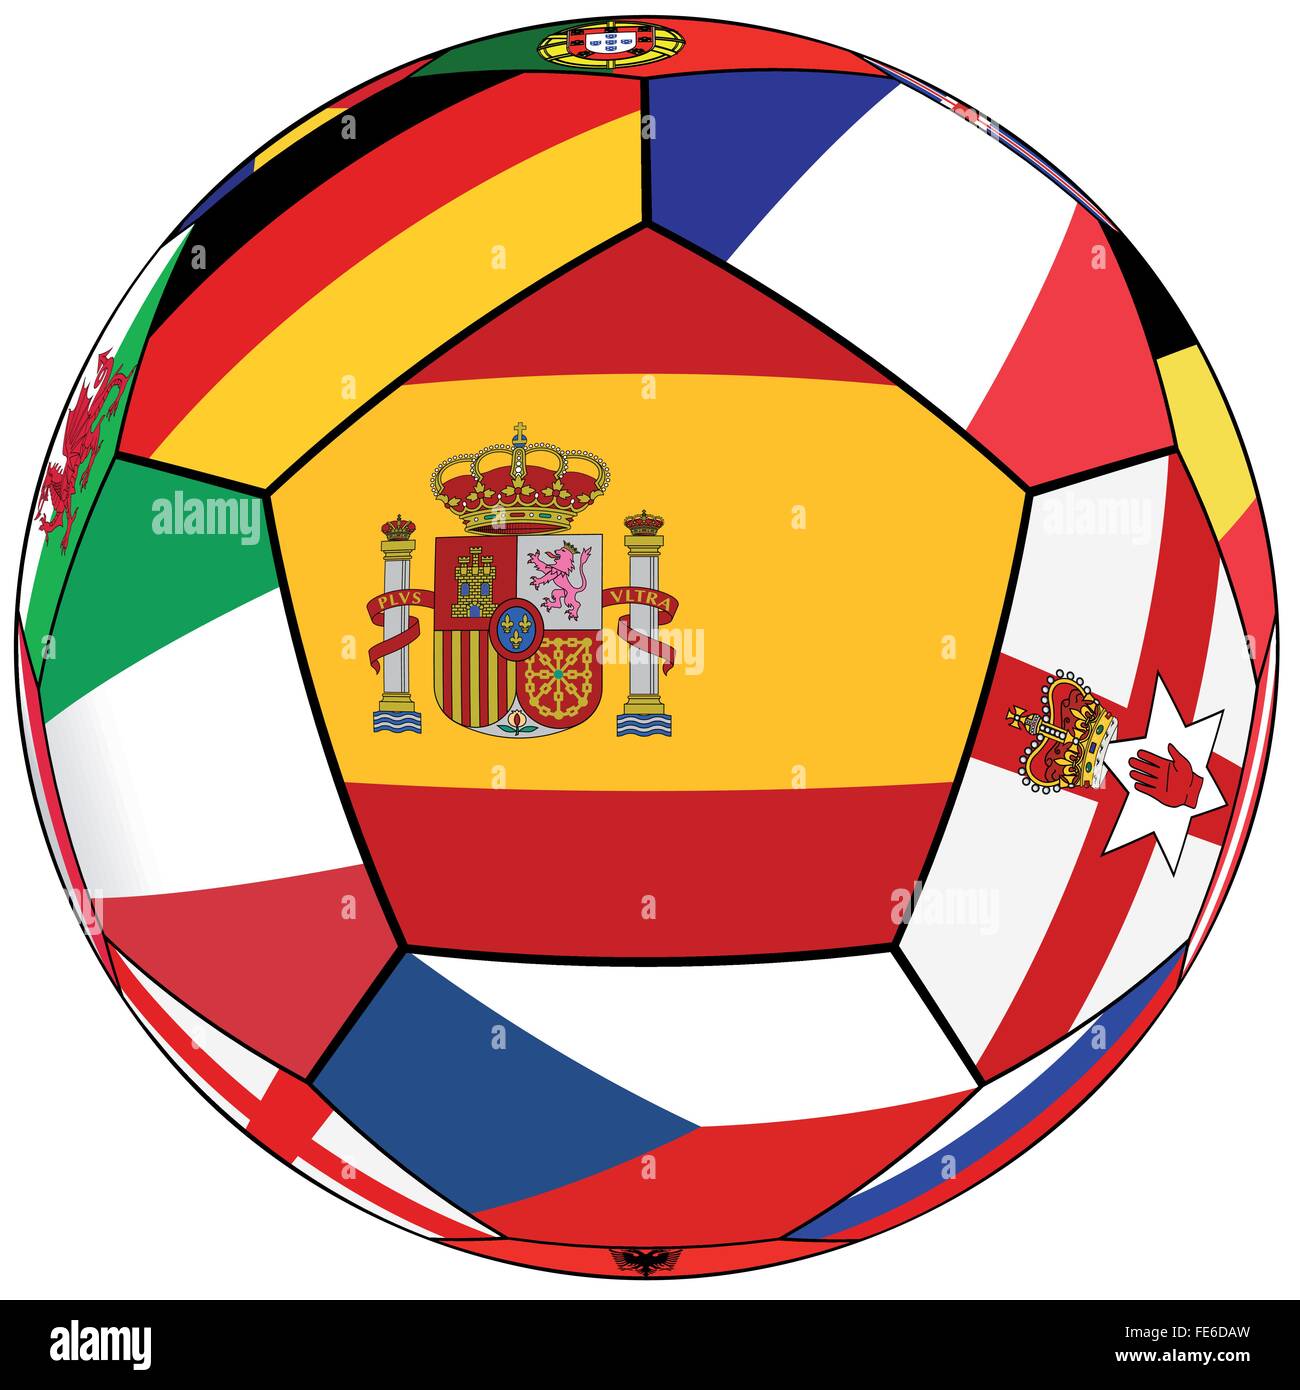 Fußball auf einem weißen Hintergrund mit Flaggen der europäischen Länder - Flagge von Spanien in der Mitte Stock Vektor